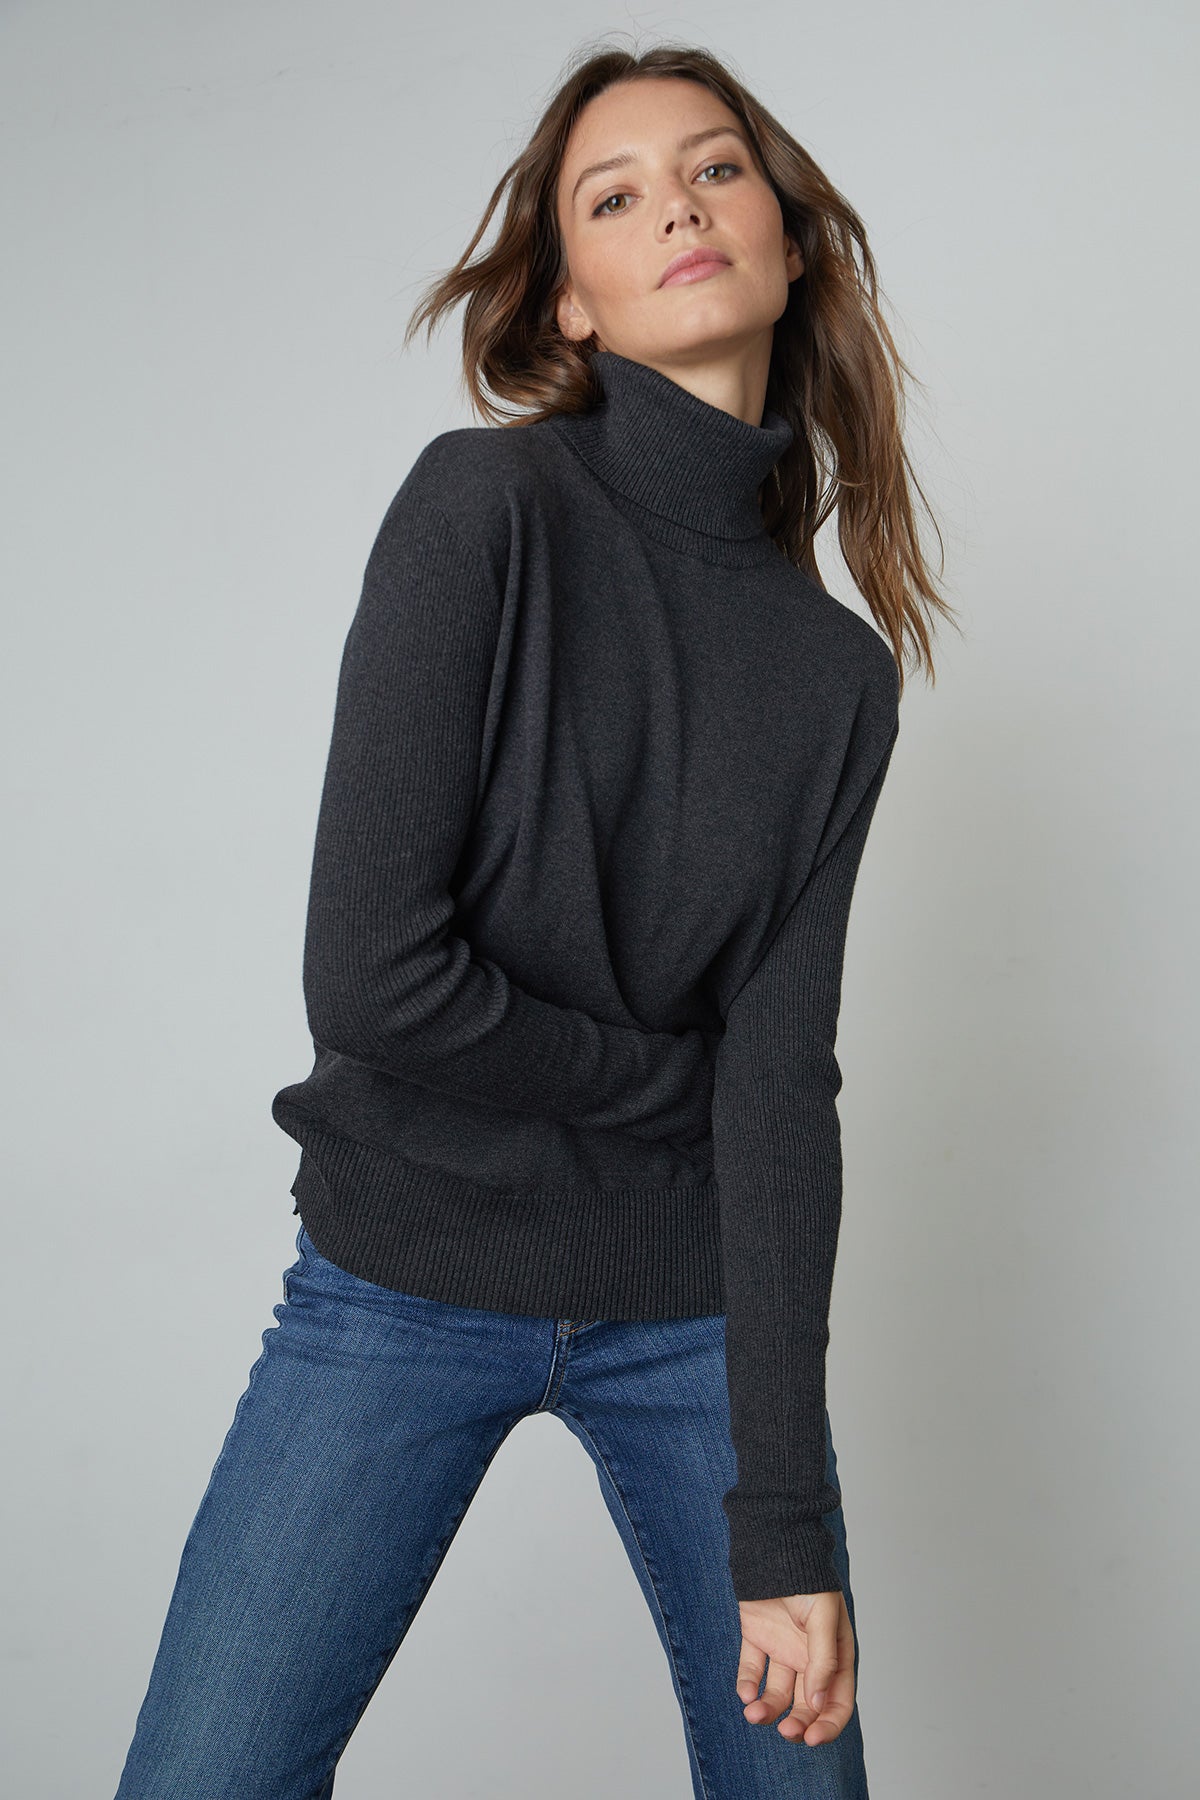   Lux Cotton Cashmere Renny Turtleneck Sweater in dark grey cinder front 